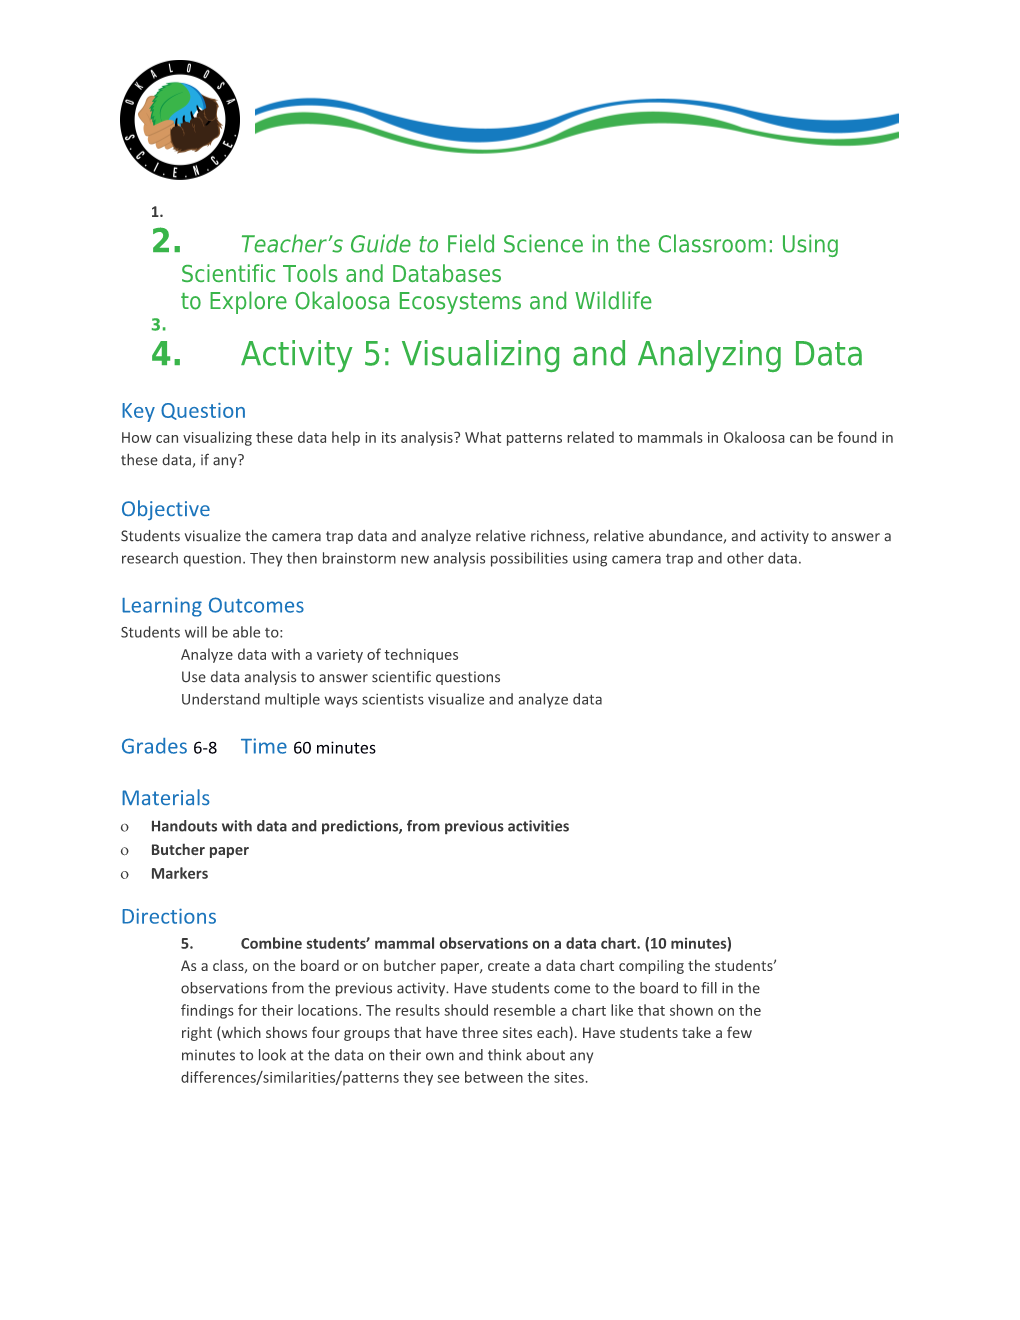 Activity 5: Visualizing and Analyzing Data